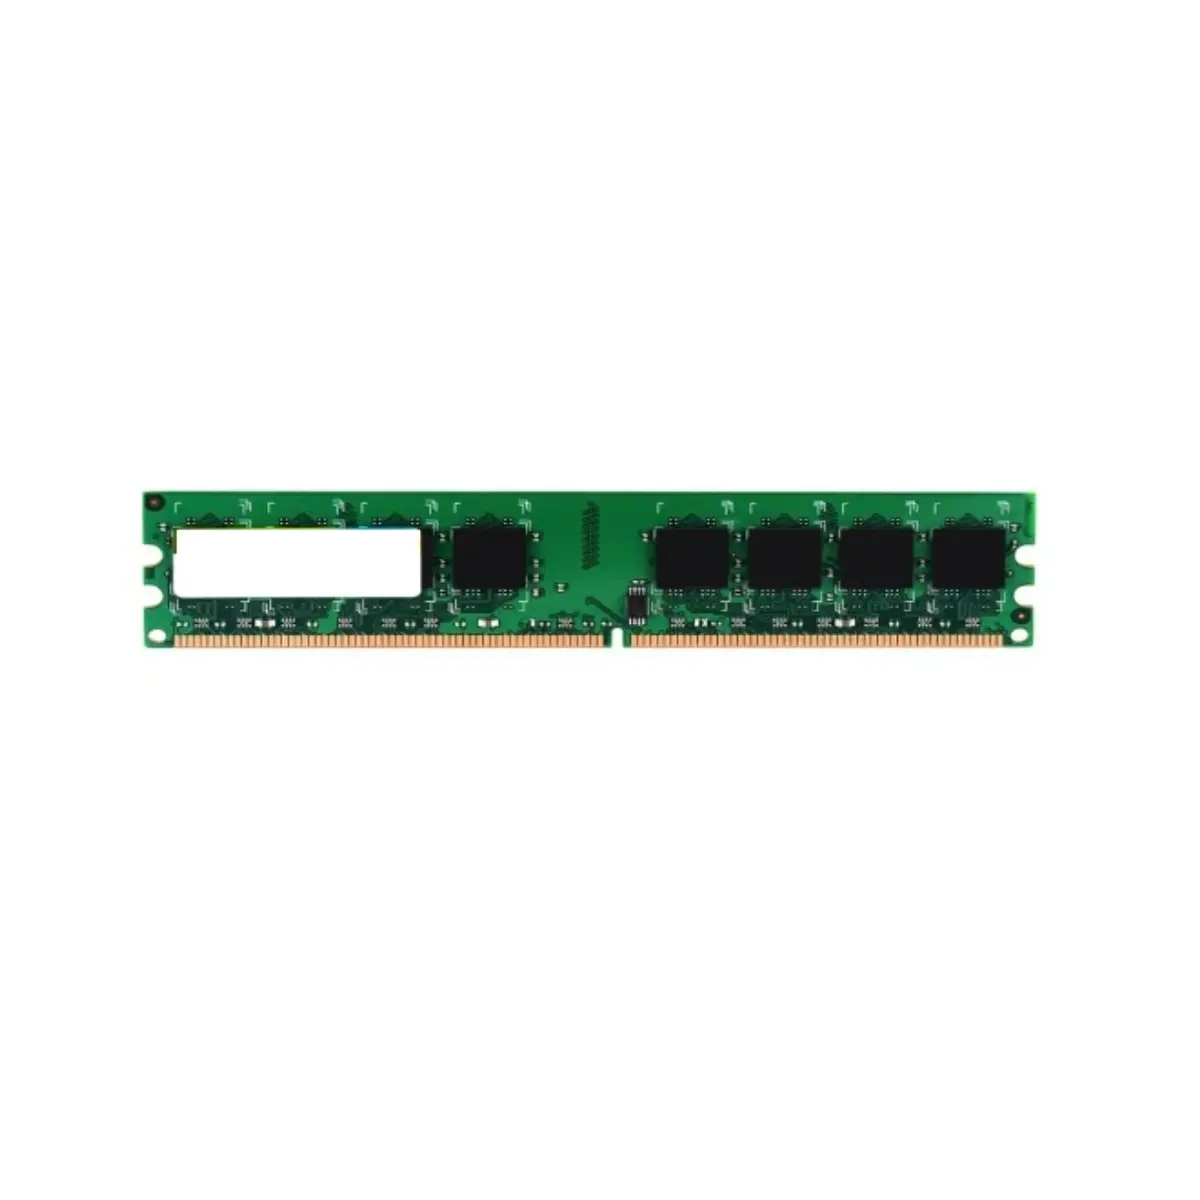 Modul memori Desktop UDIMM DDR2 2GB dan 2GB efisien tinggi